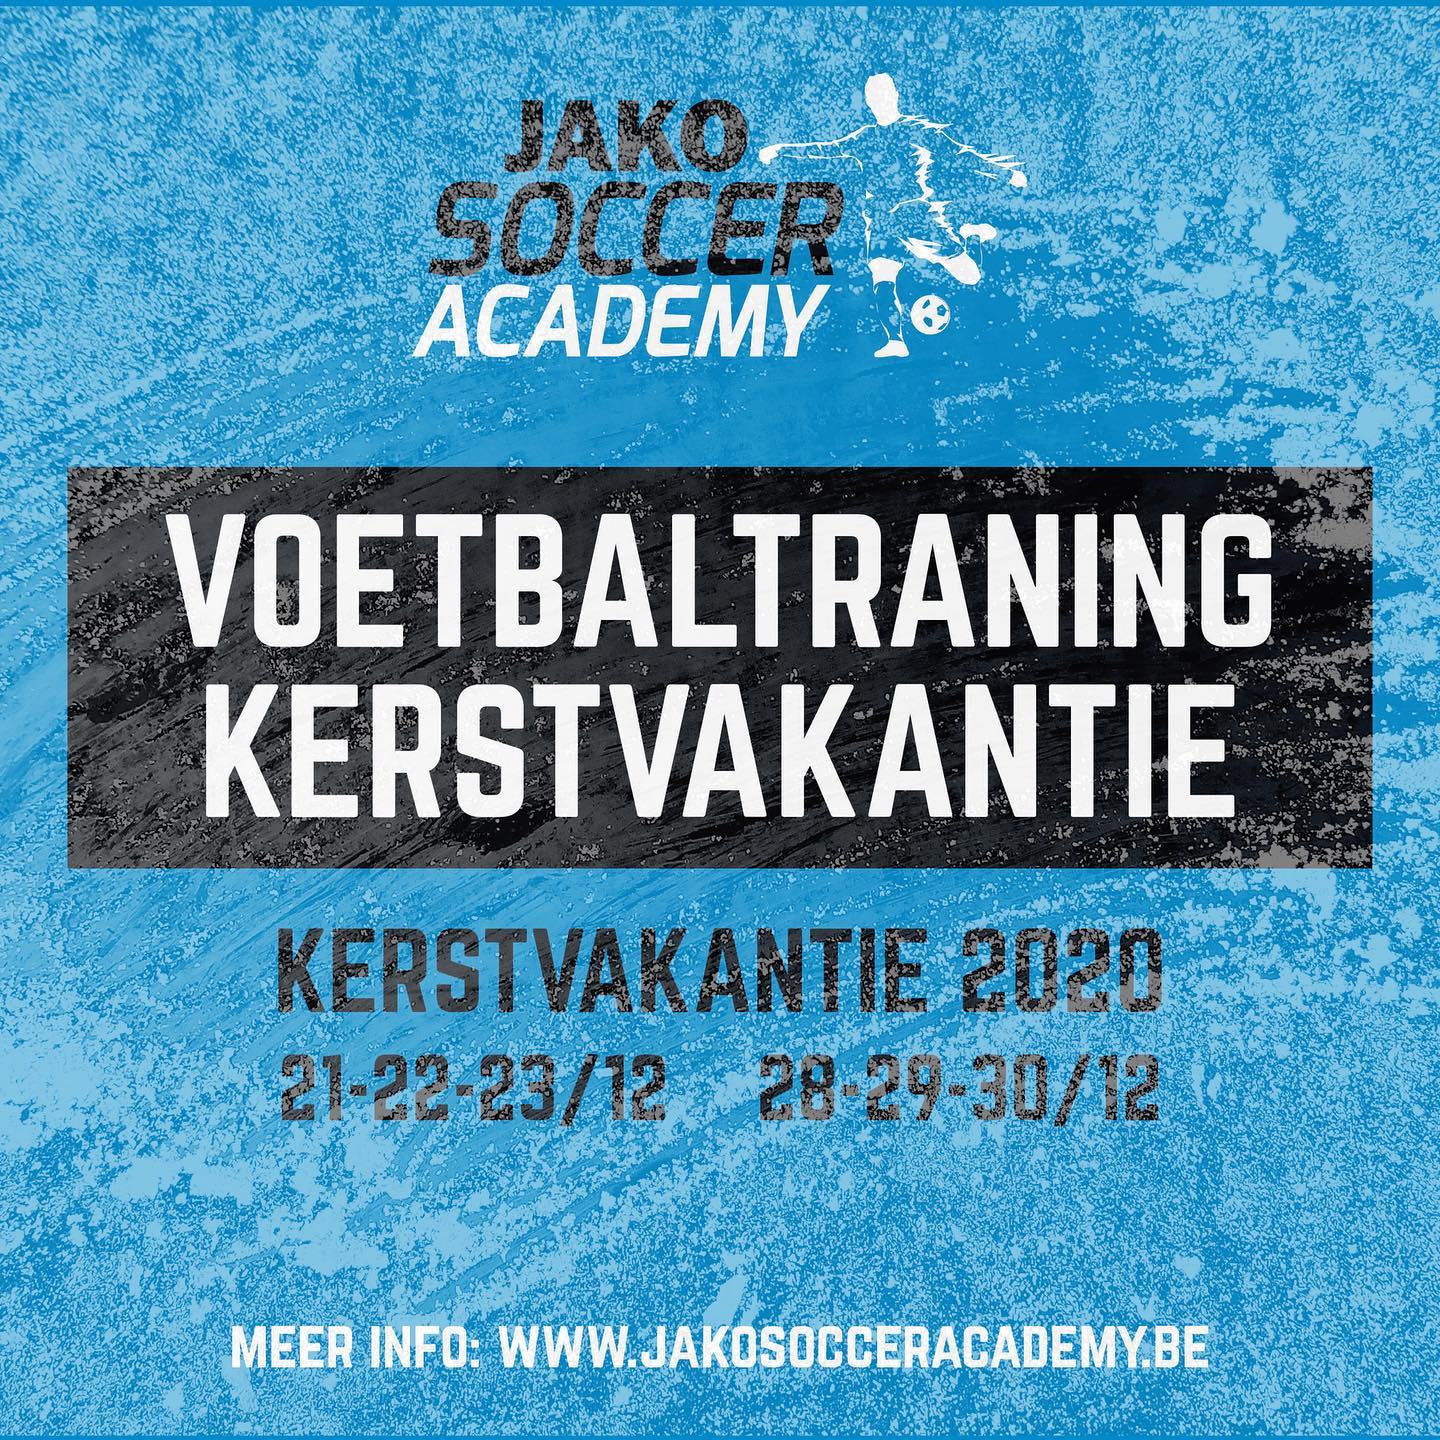 JAKO Soccer Academy organiseert tijdens de kerstvakantie trainingssessies voor de jeugd. Meer info op www.jakosocceracademy.be/voetbalstages #voetbaltraining #jeugdvoetbal #kfclint #sportenisgezond